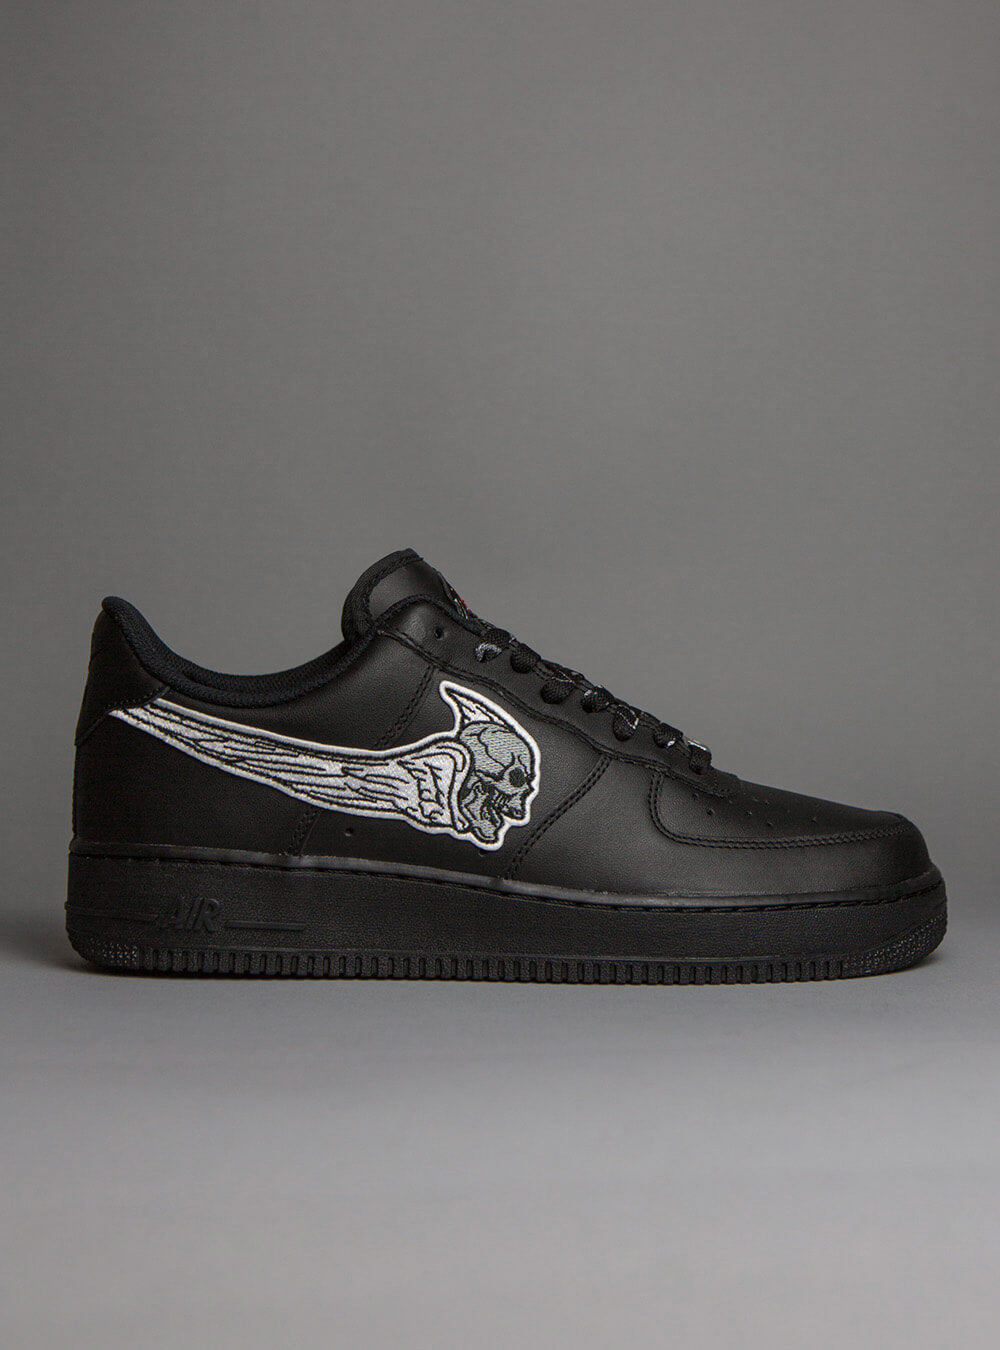 Sinner AF1 black Custom sneakers – stillalive